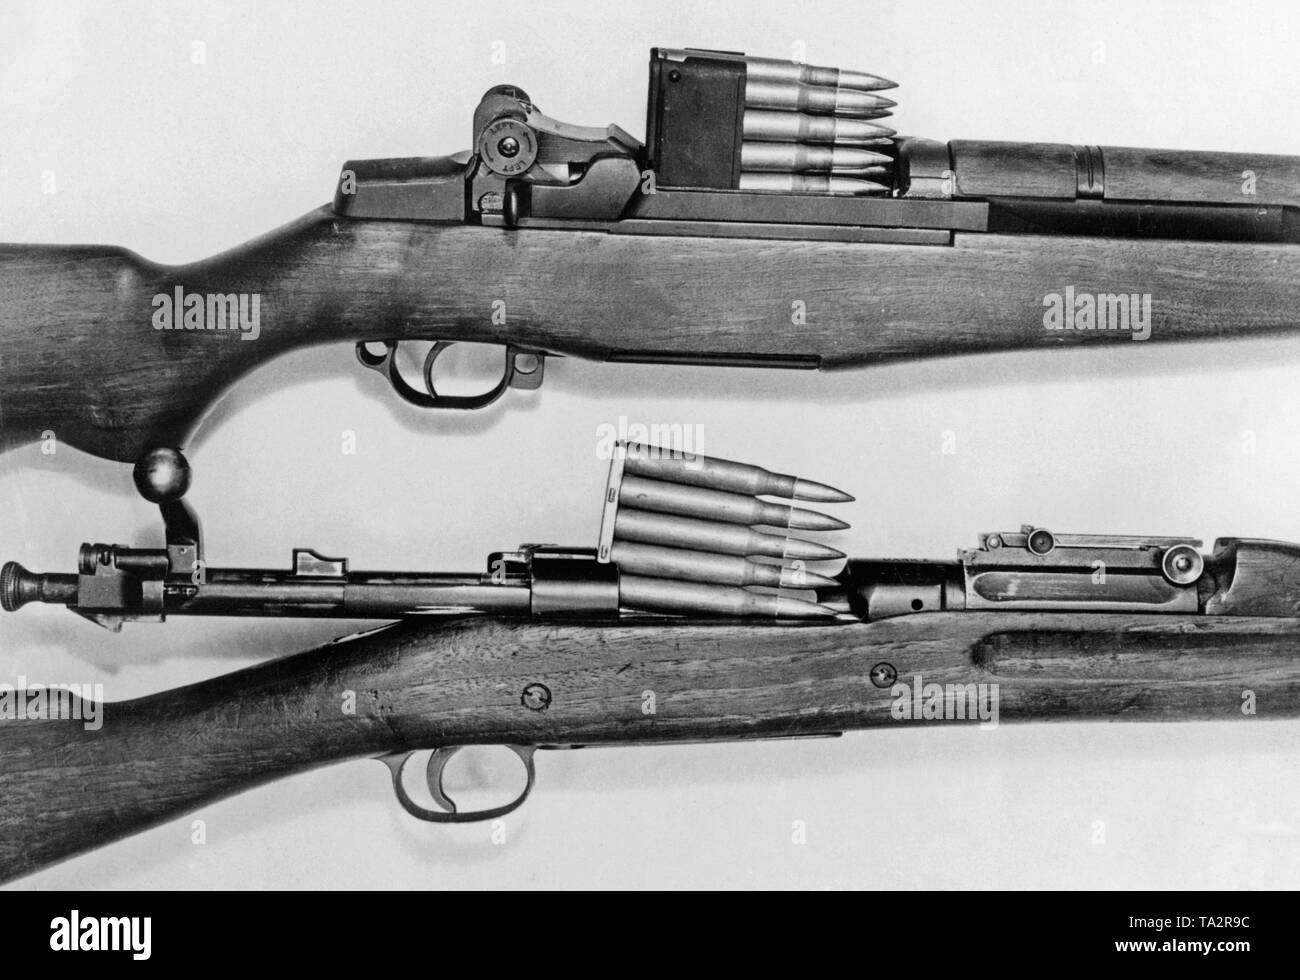 Oben: M1 Garand, autoloading Gewehr (halb-automatische) mit einem 8-Schuss Magazin. Unten: Springfield M1903, wiederholend Gewehr mit 5-schuss Magazin. Stockfoto